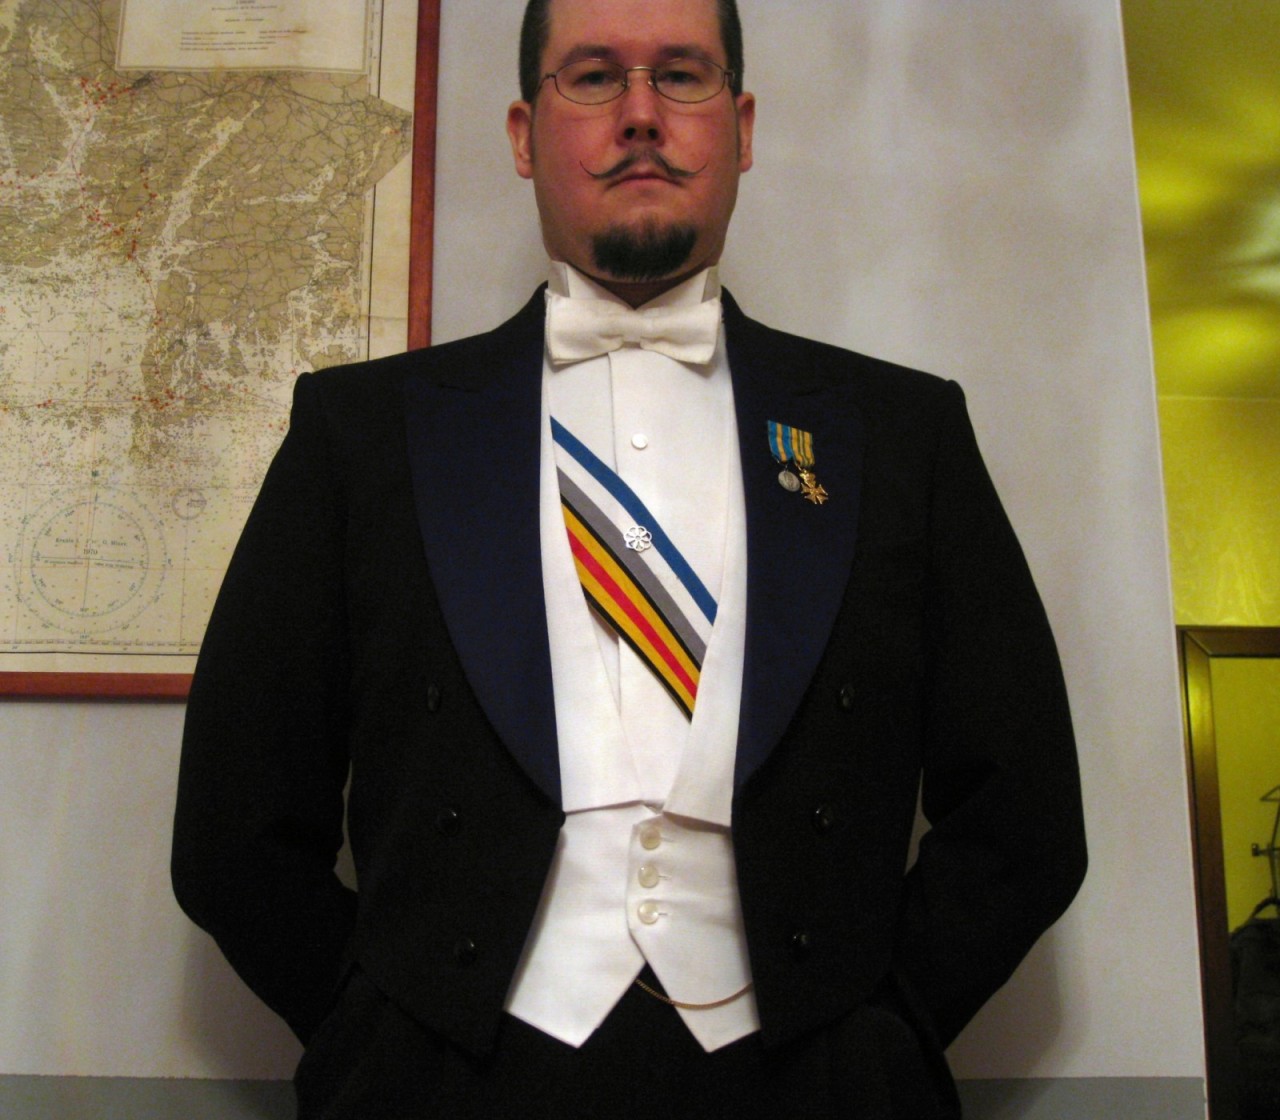 White tie — дресс-код членов королевских семей и европейской аристократии.